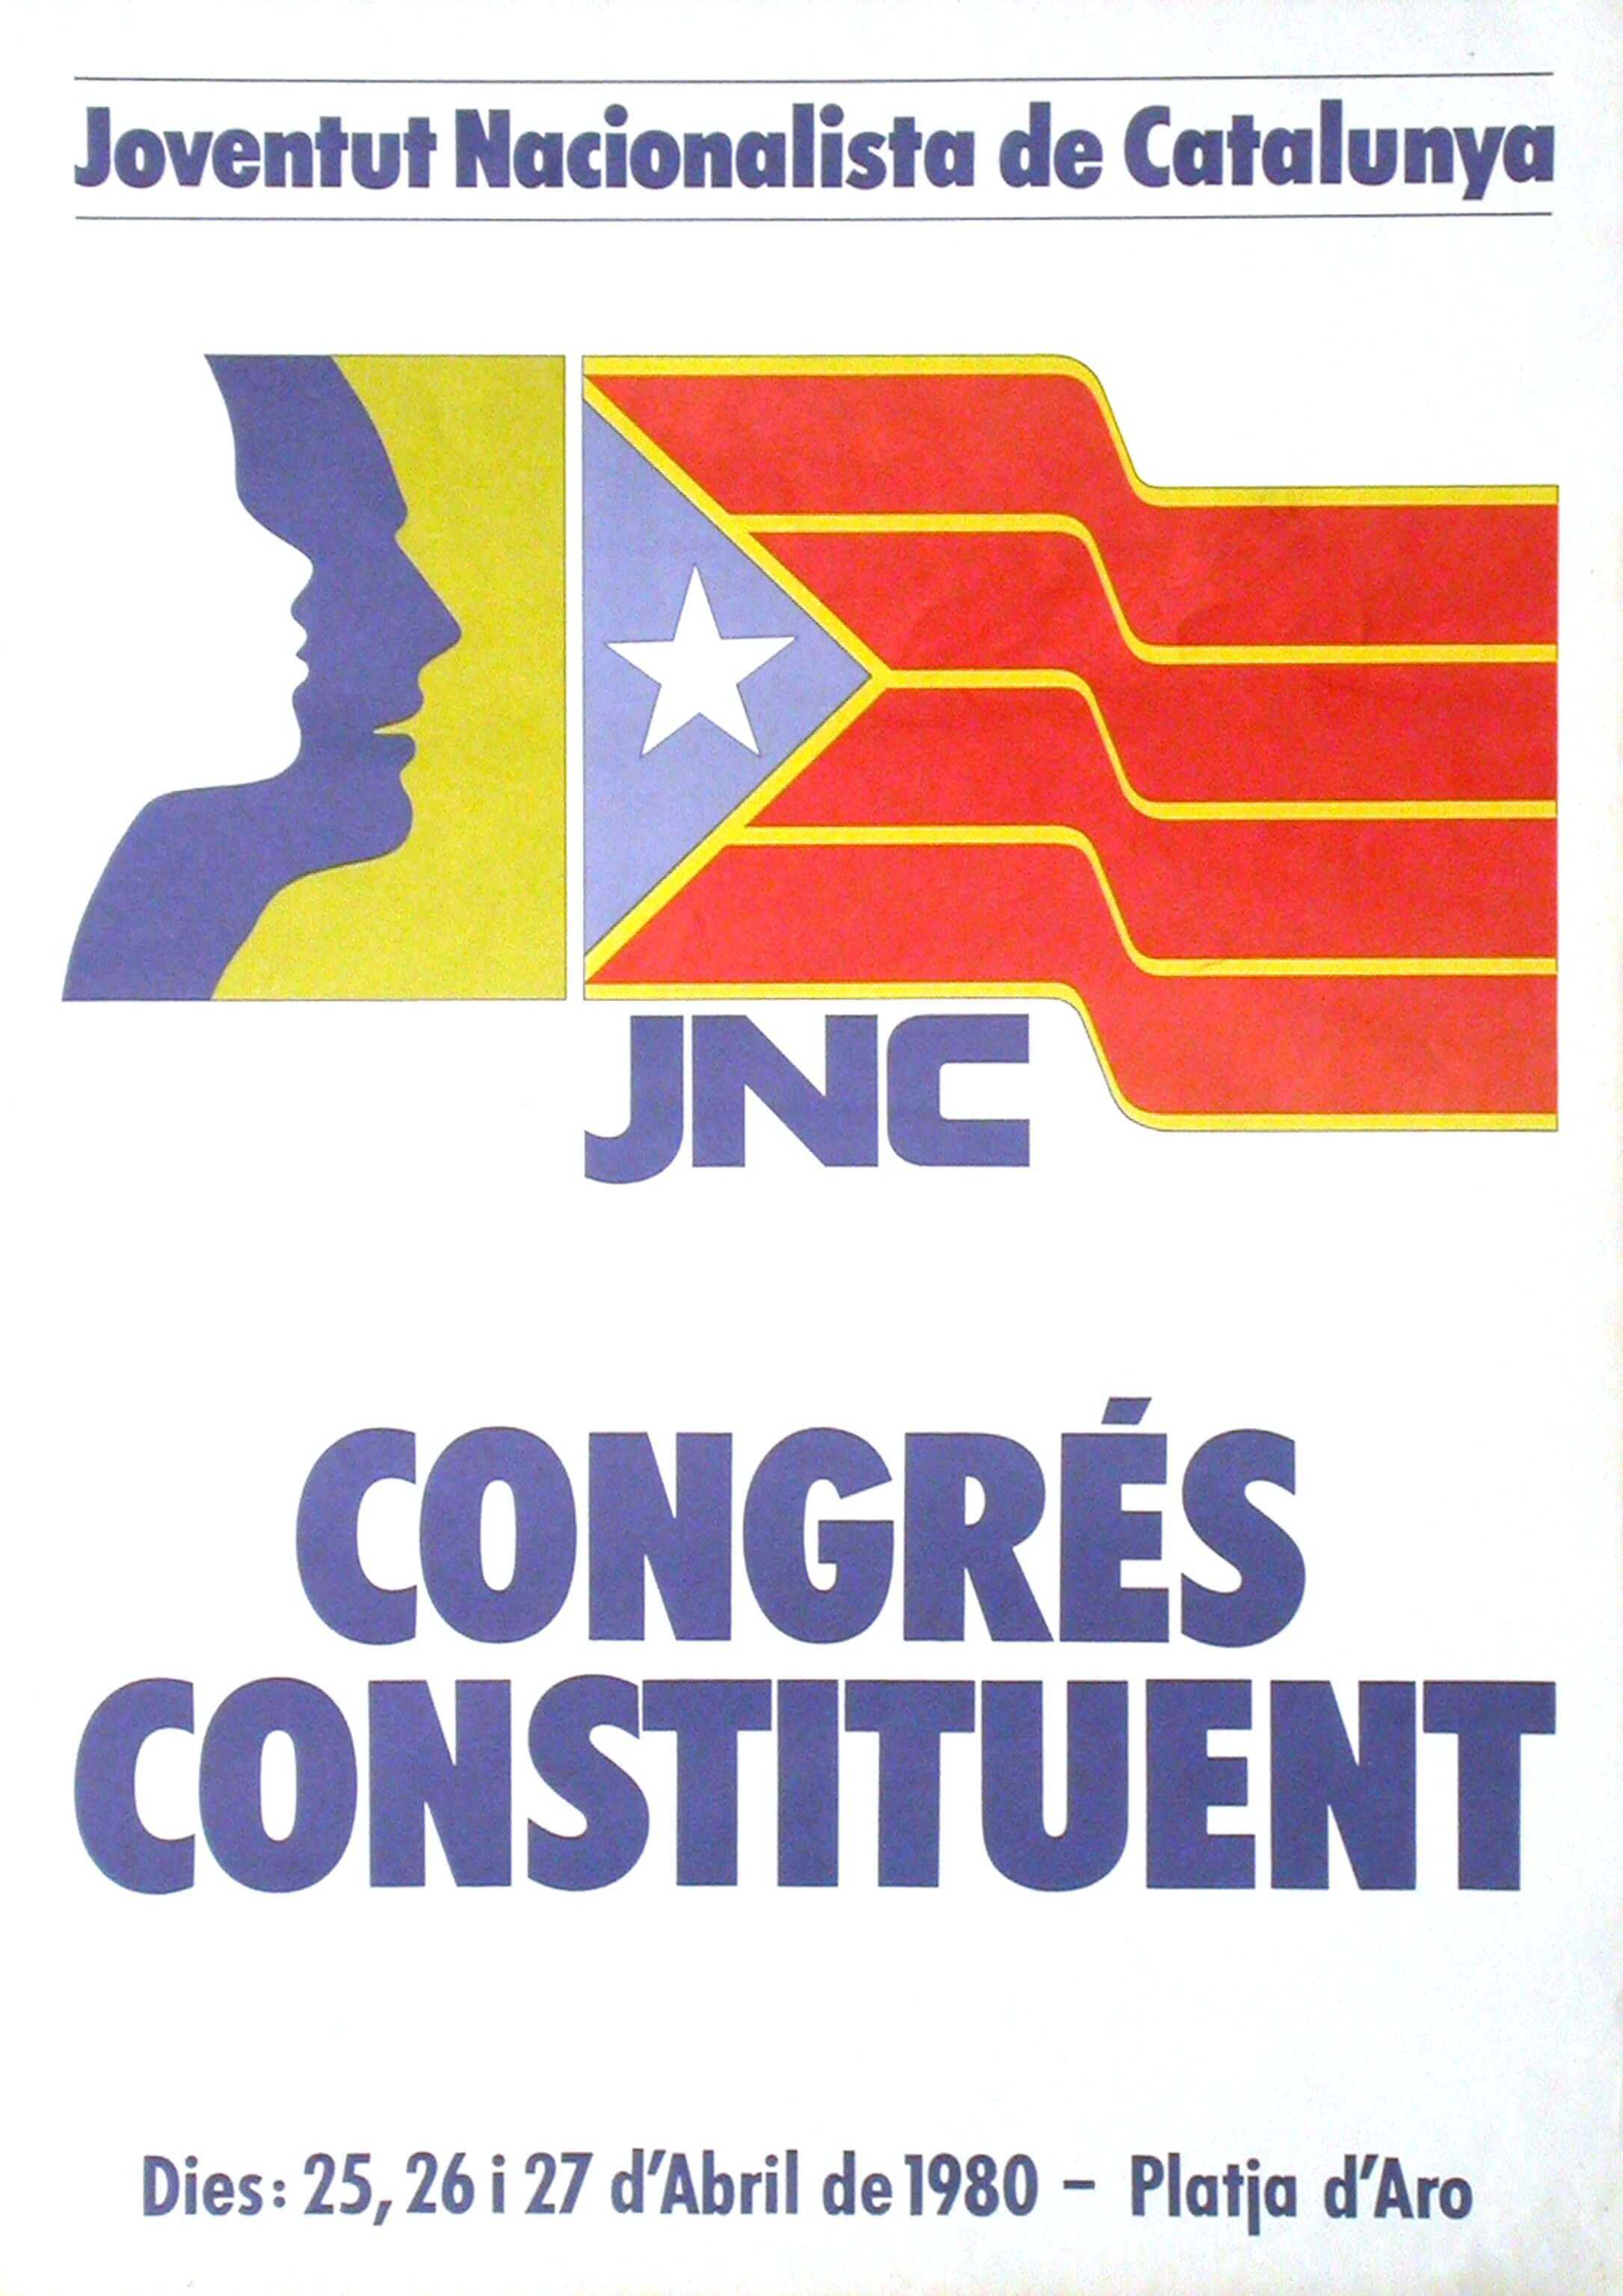 1980 - Congrés constituent